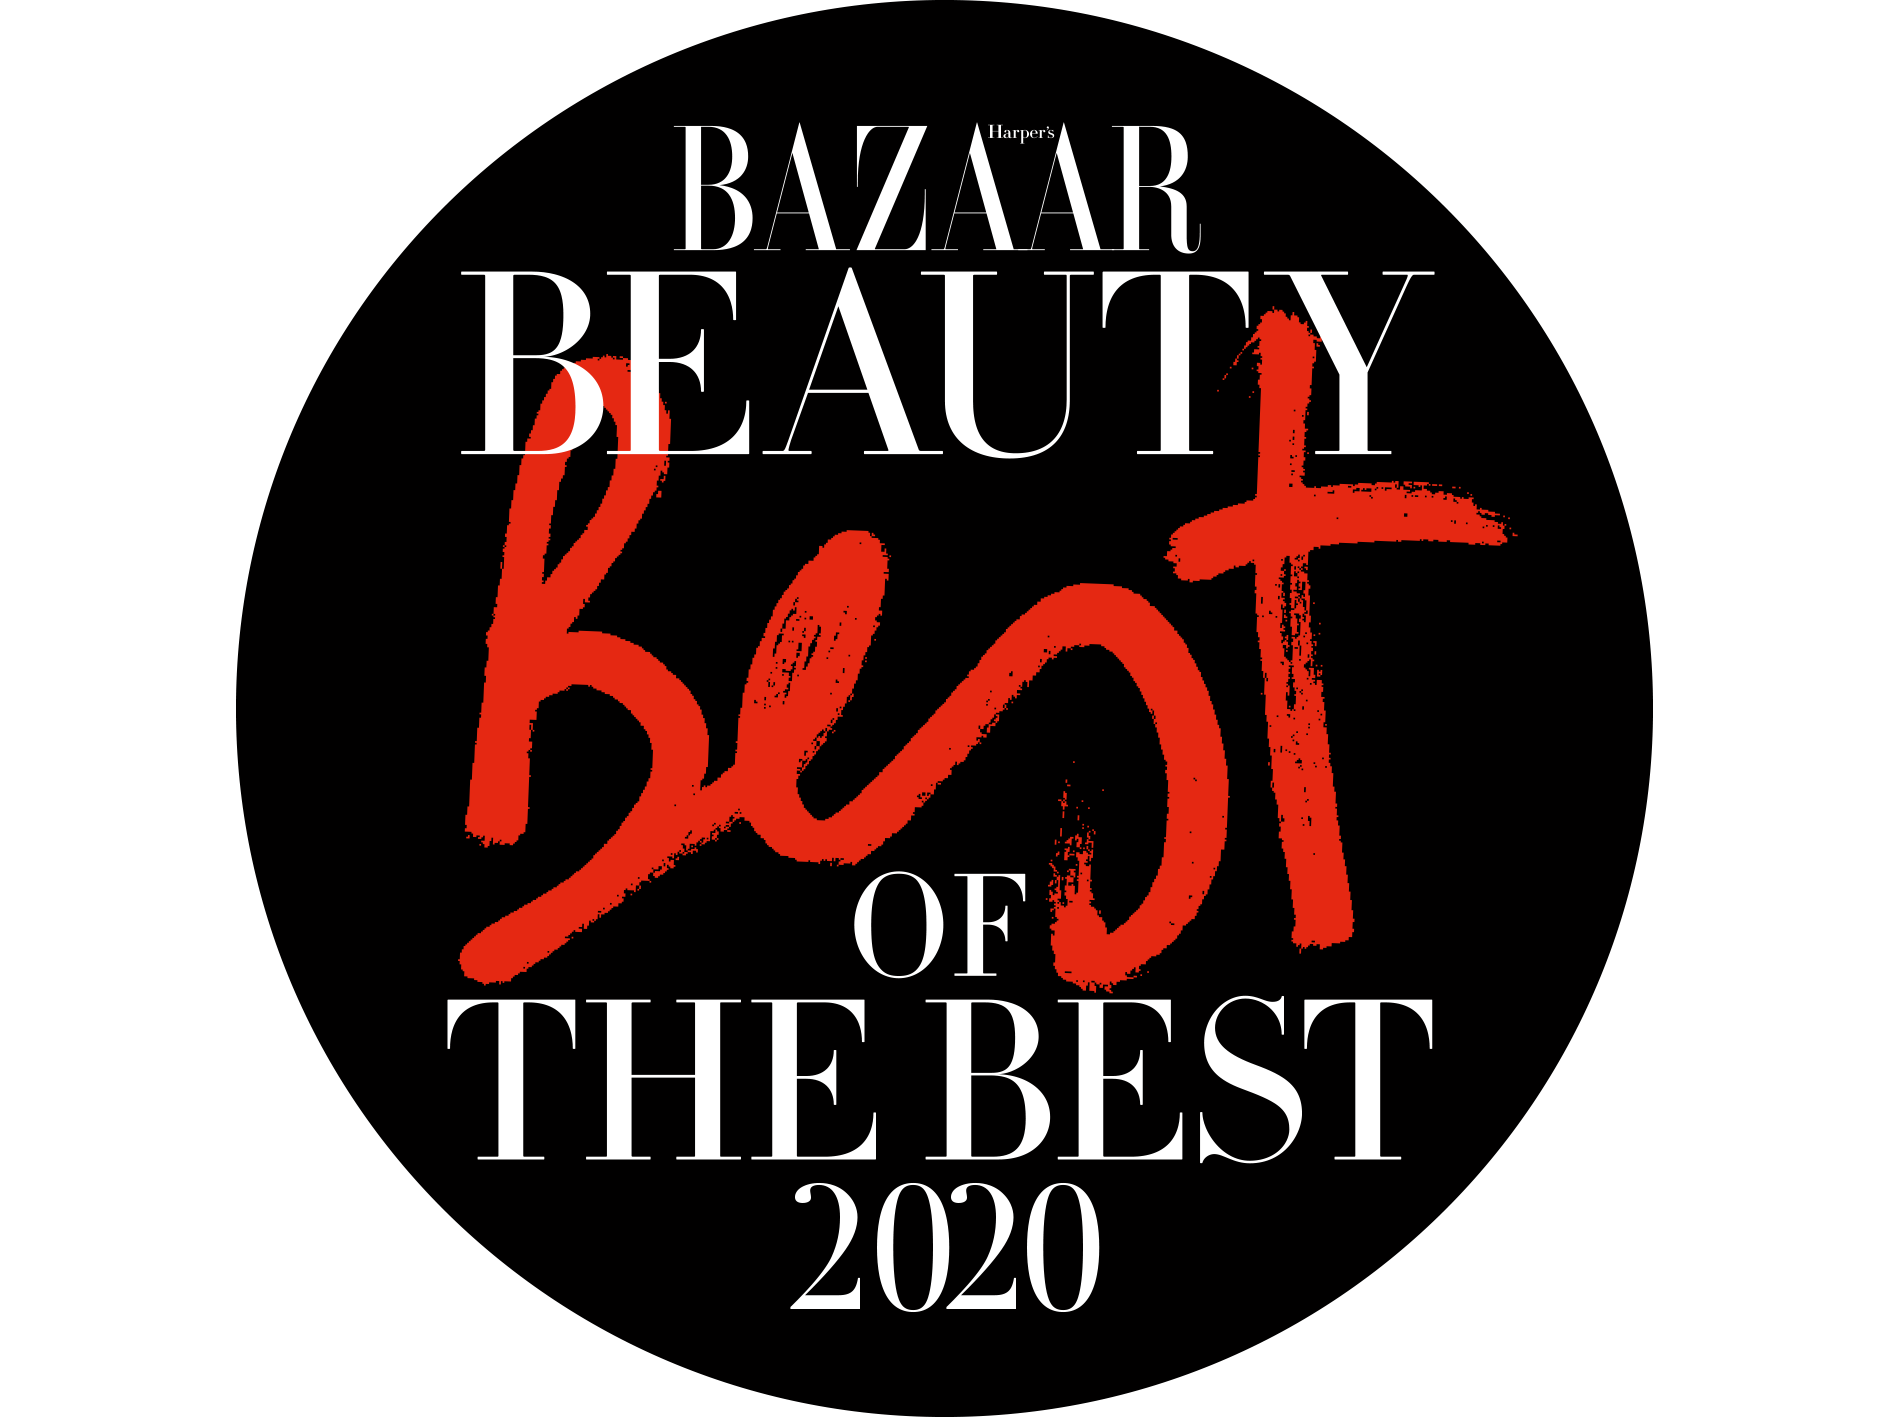 Bazaar Beauty - 2020 Best of the Best